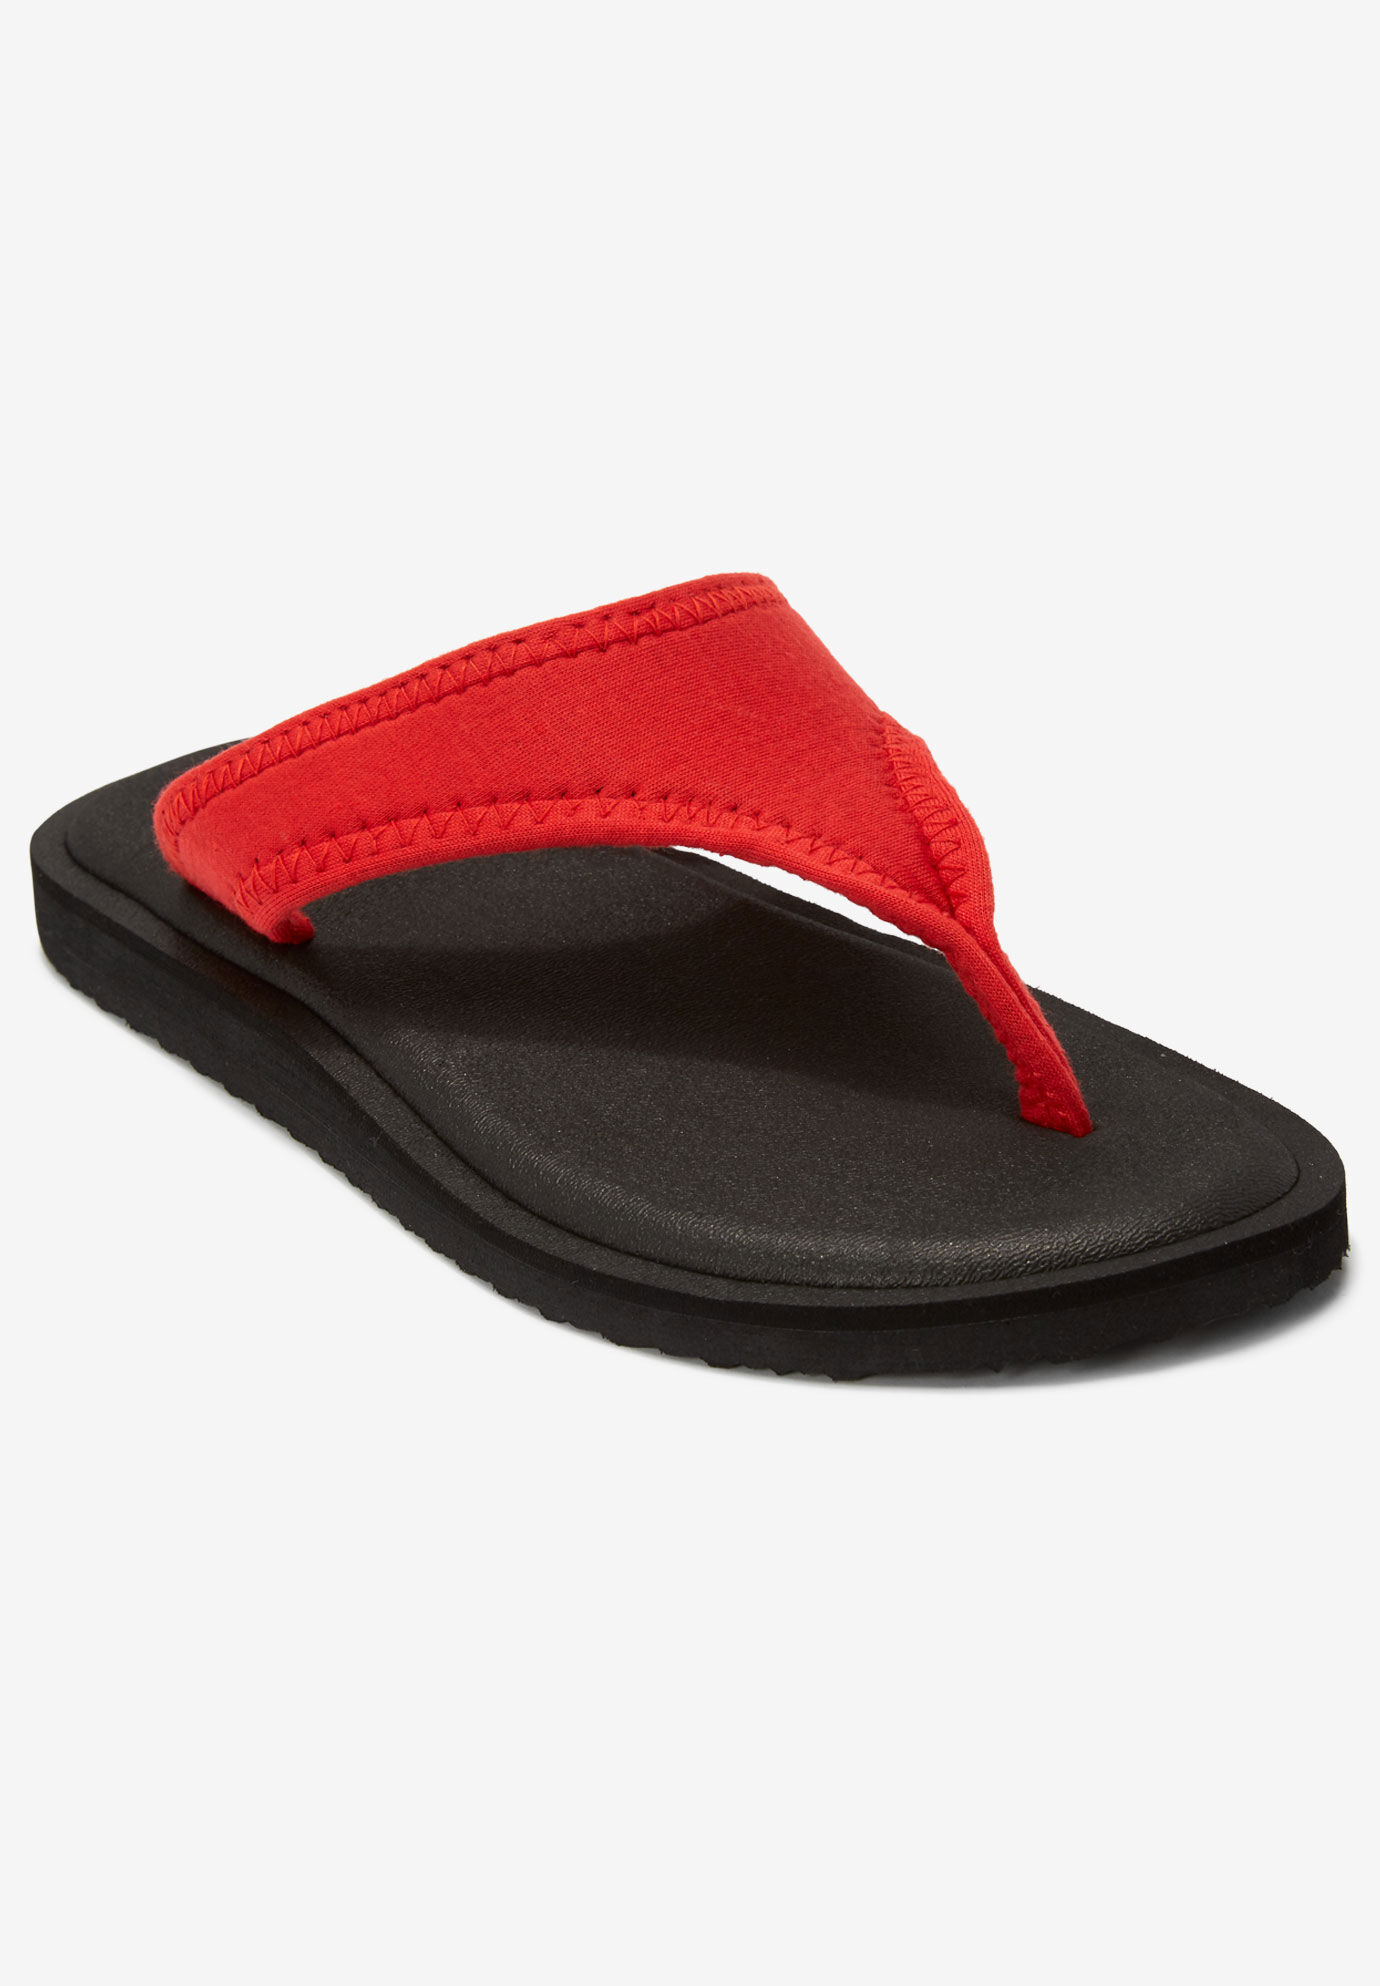 women's wide width slide sandals